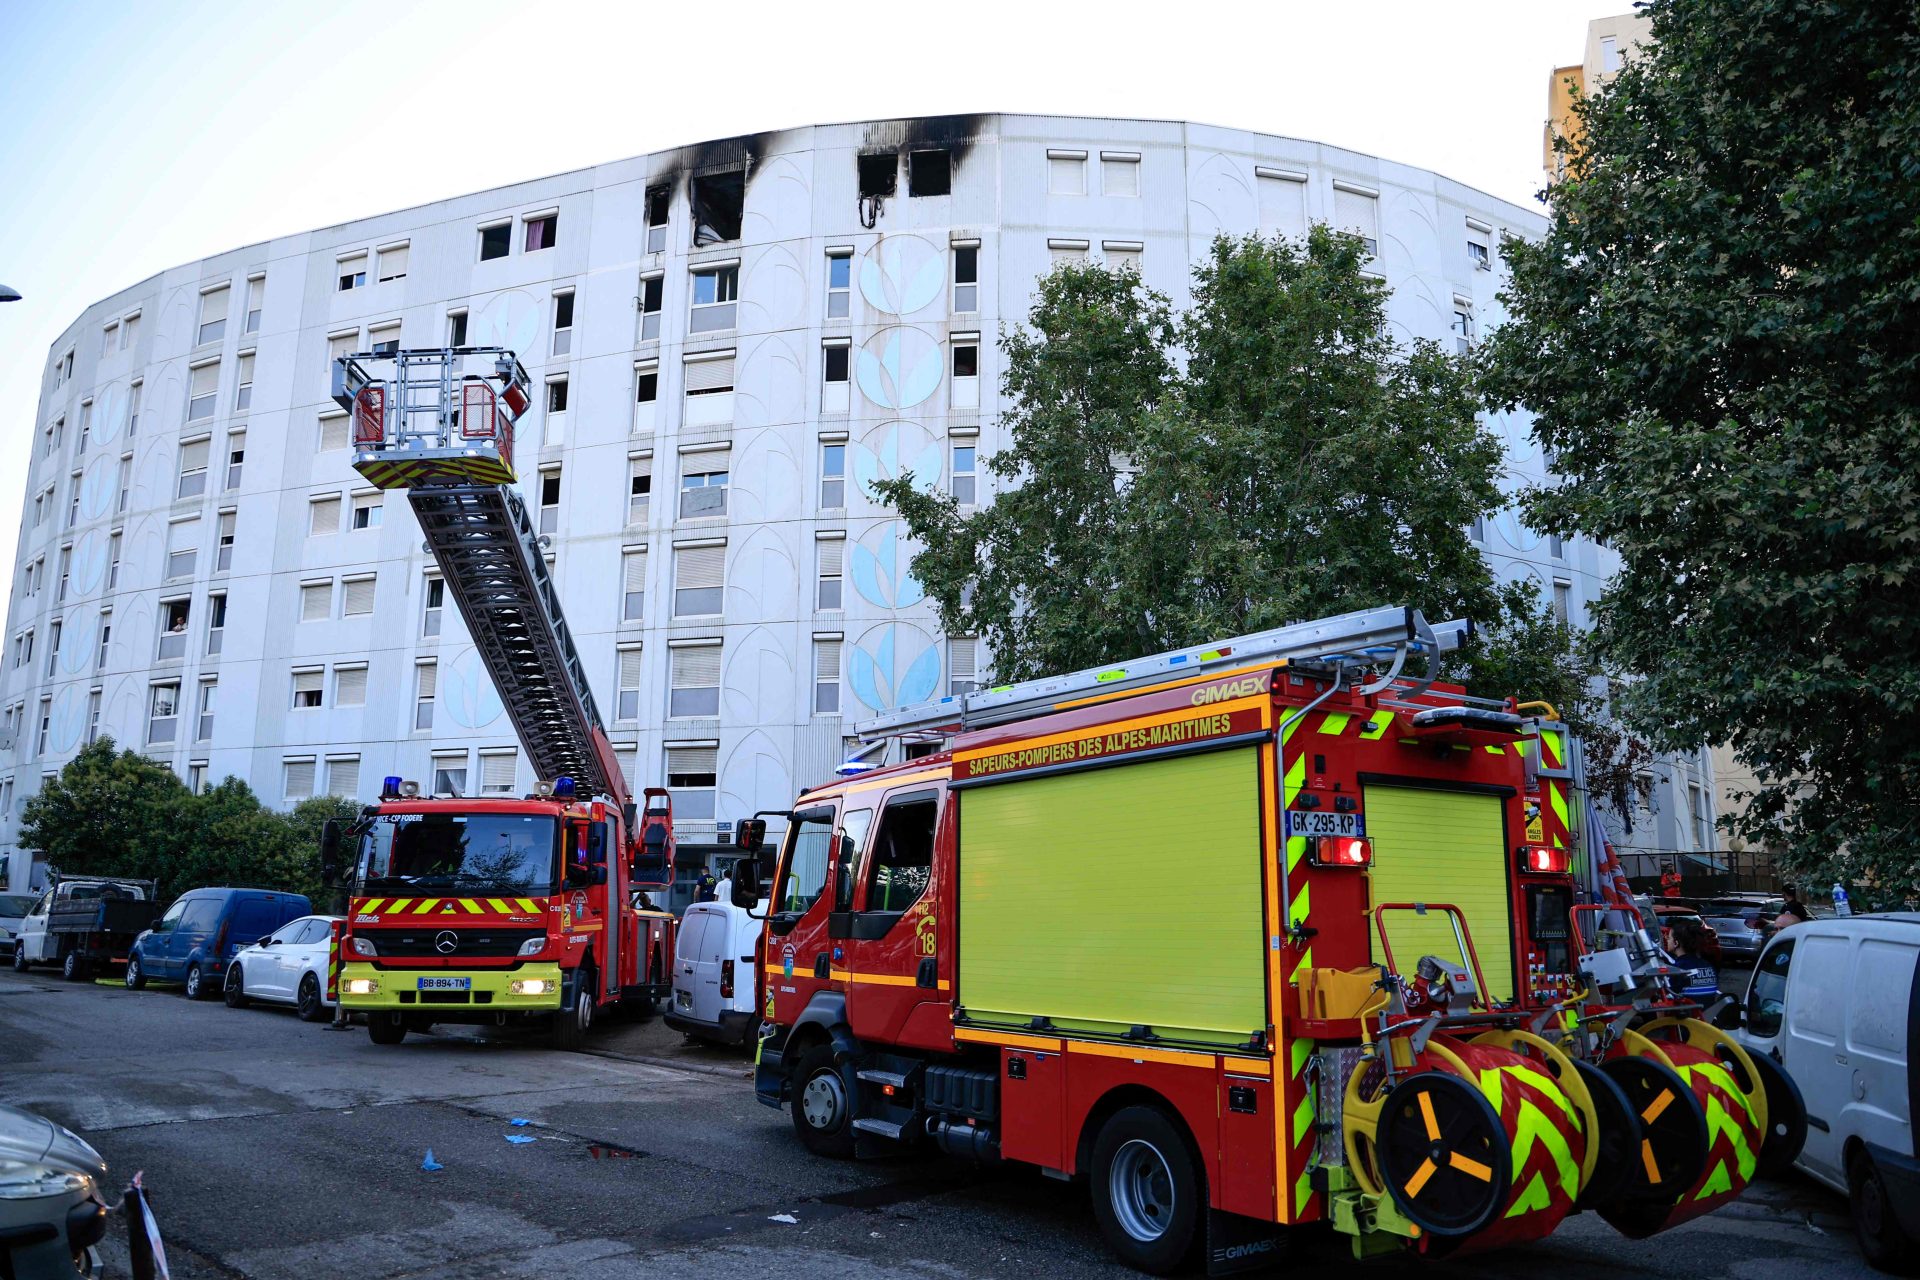 Três crianças e um adolescente morreram num incêndio num edifício residencial em Nice